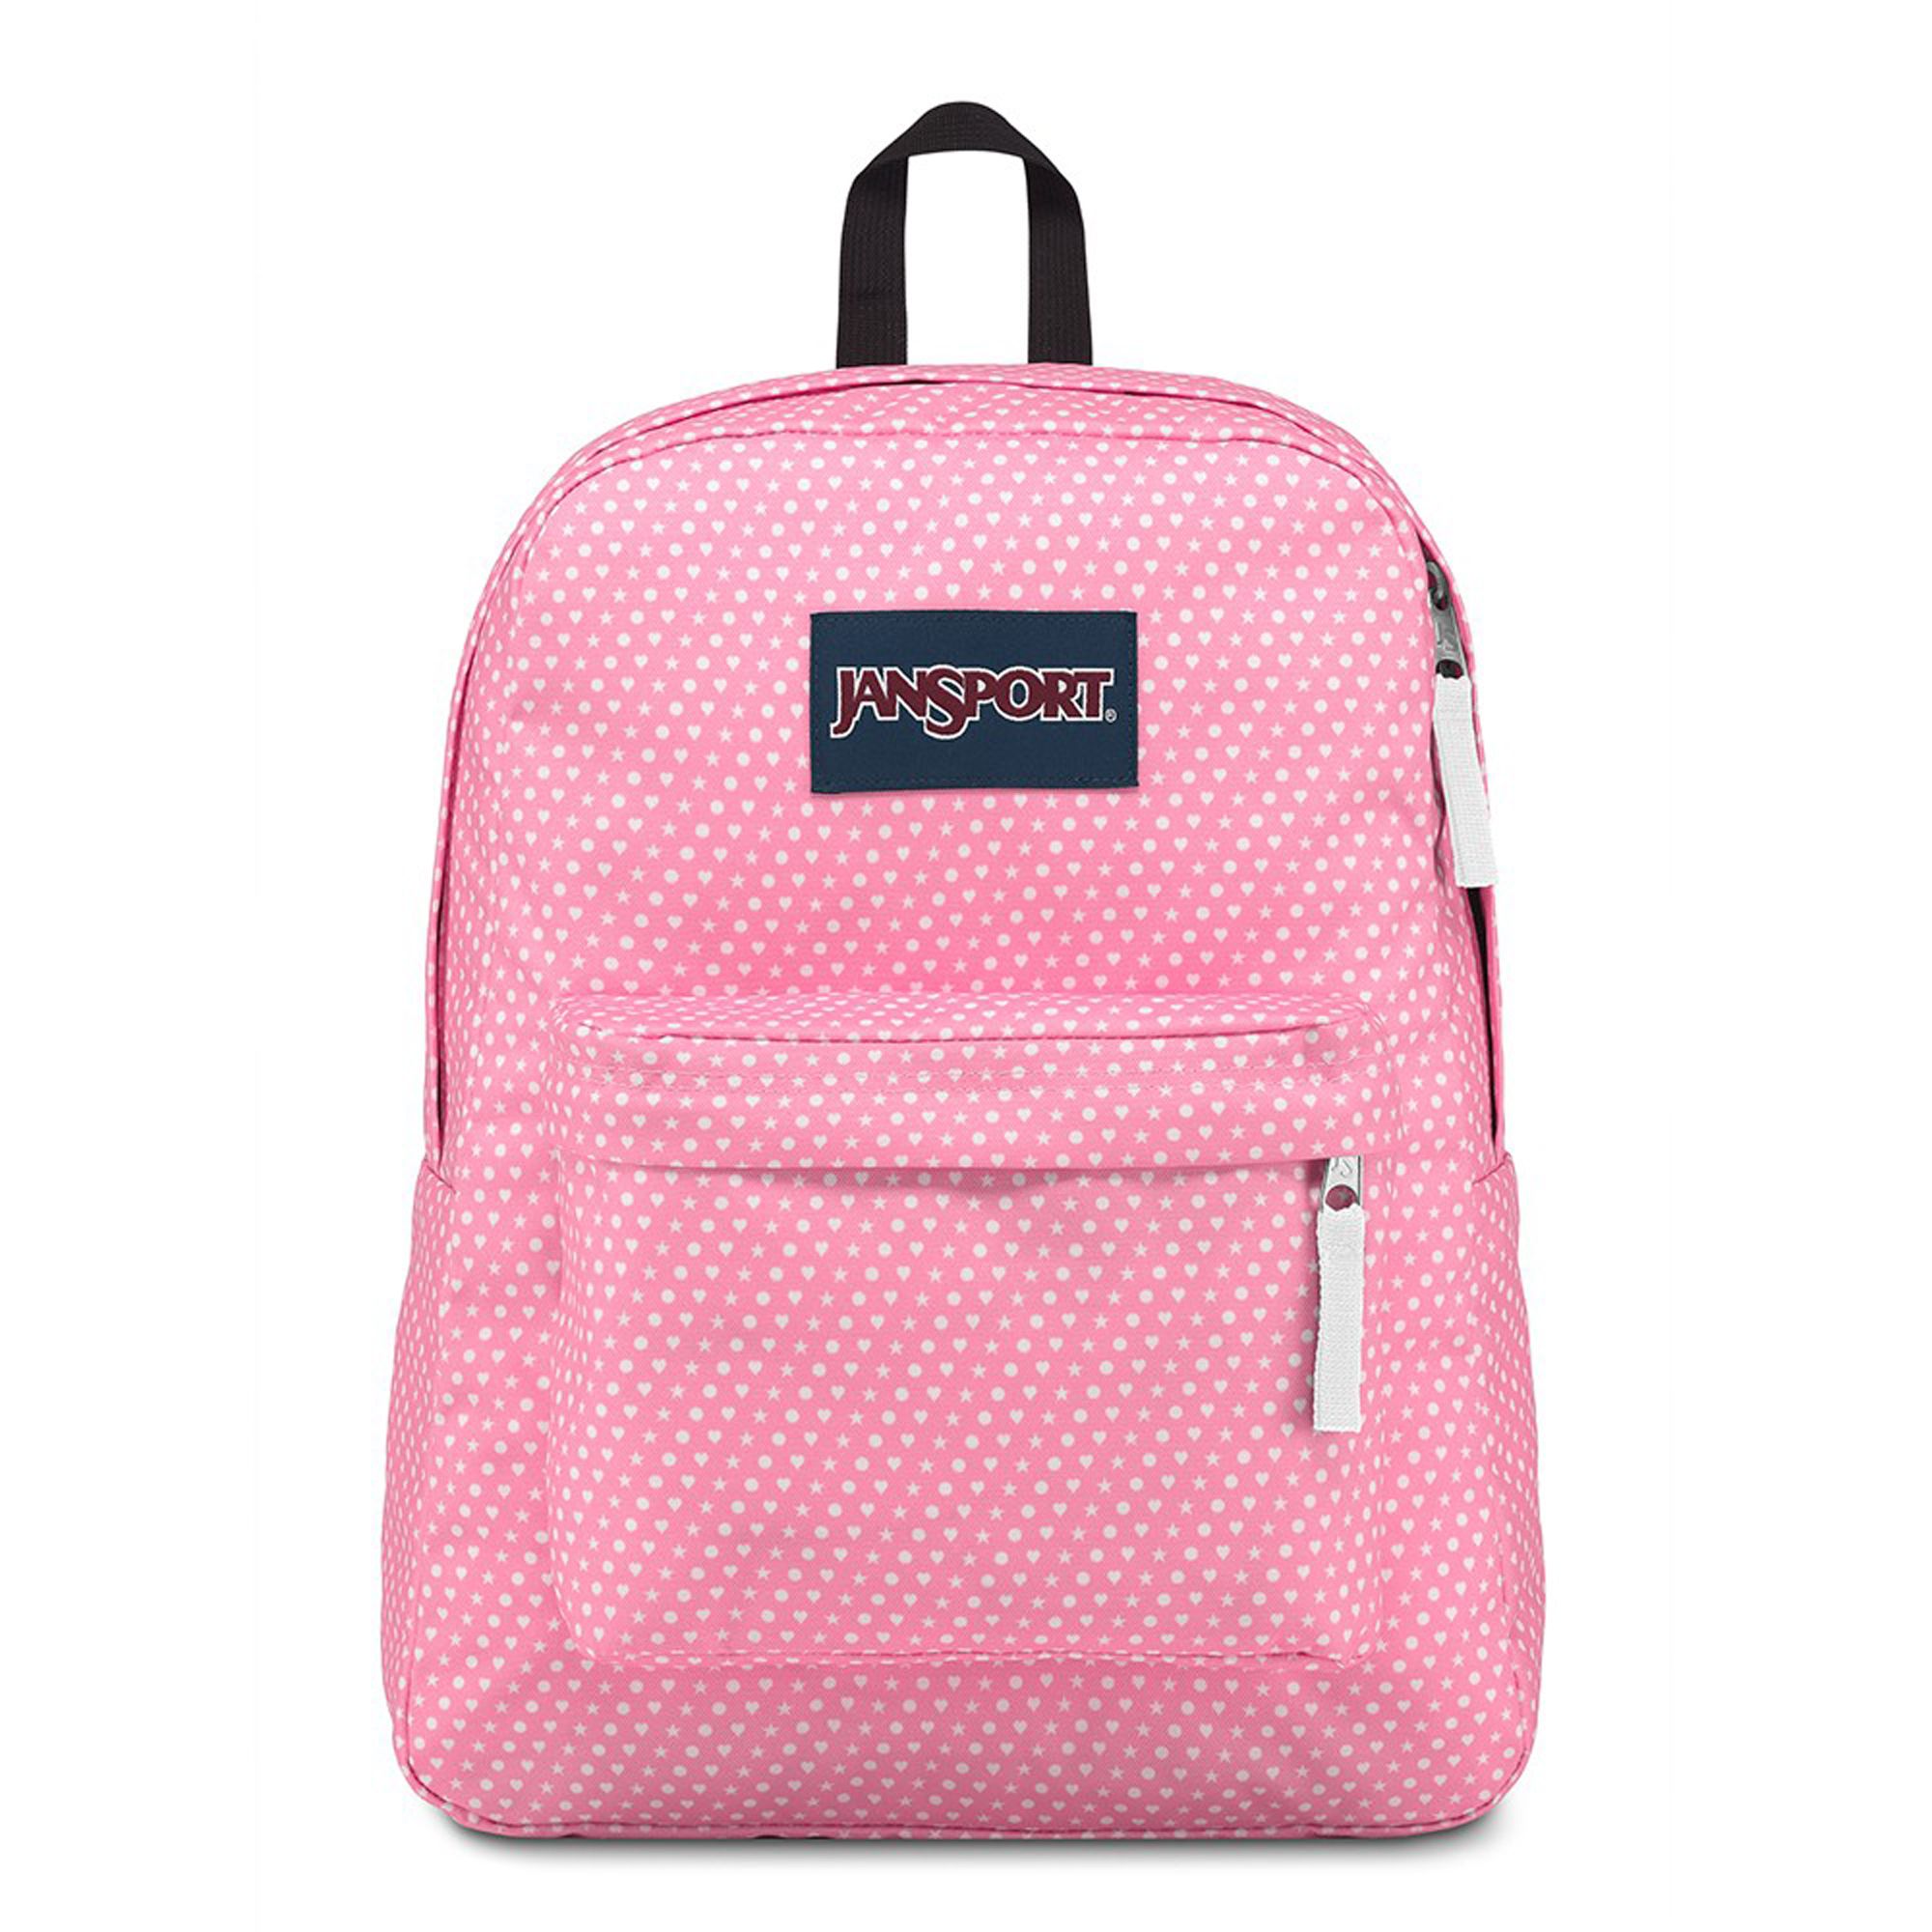  Jansport Superbreak Backpack - Icon 